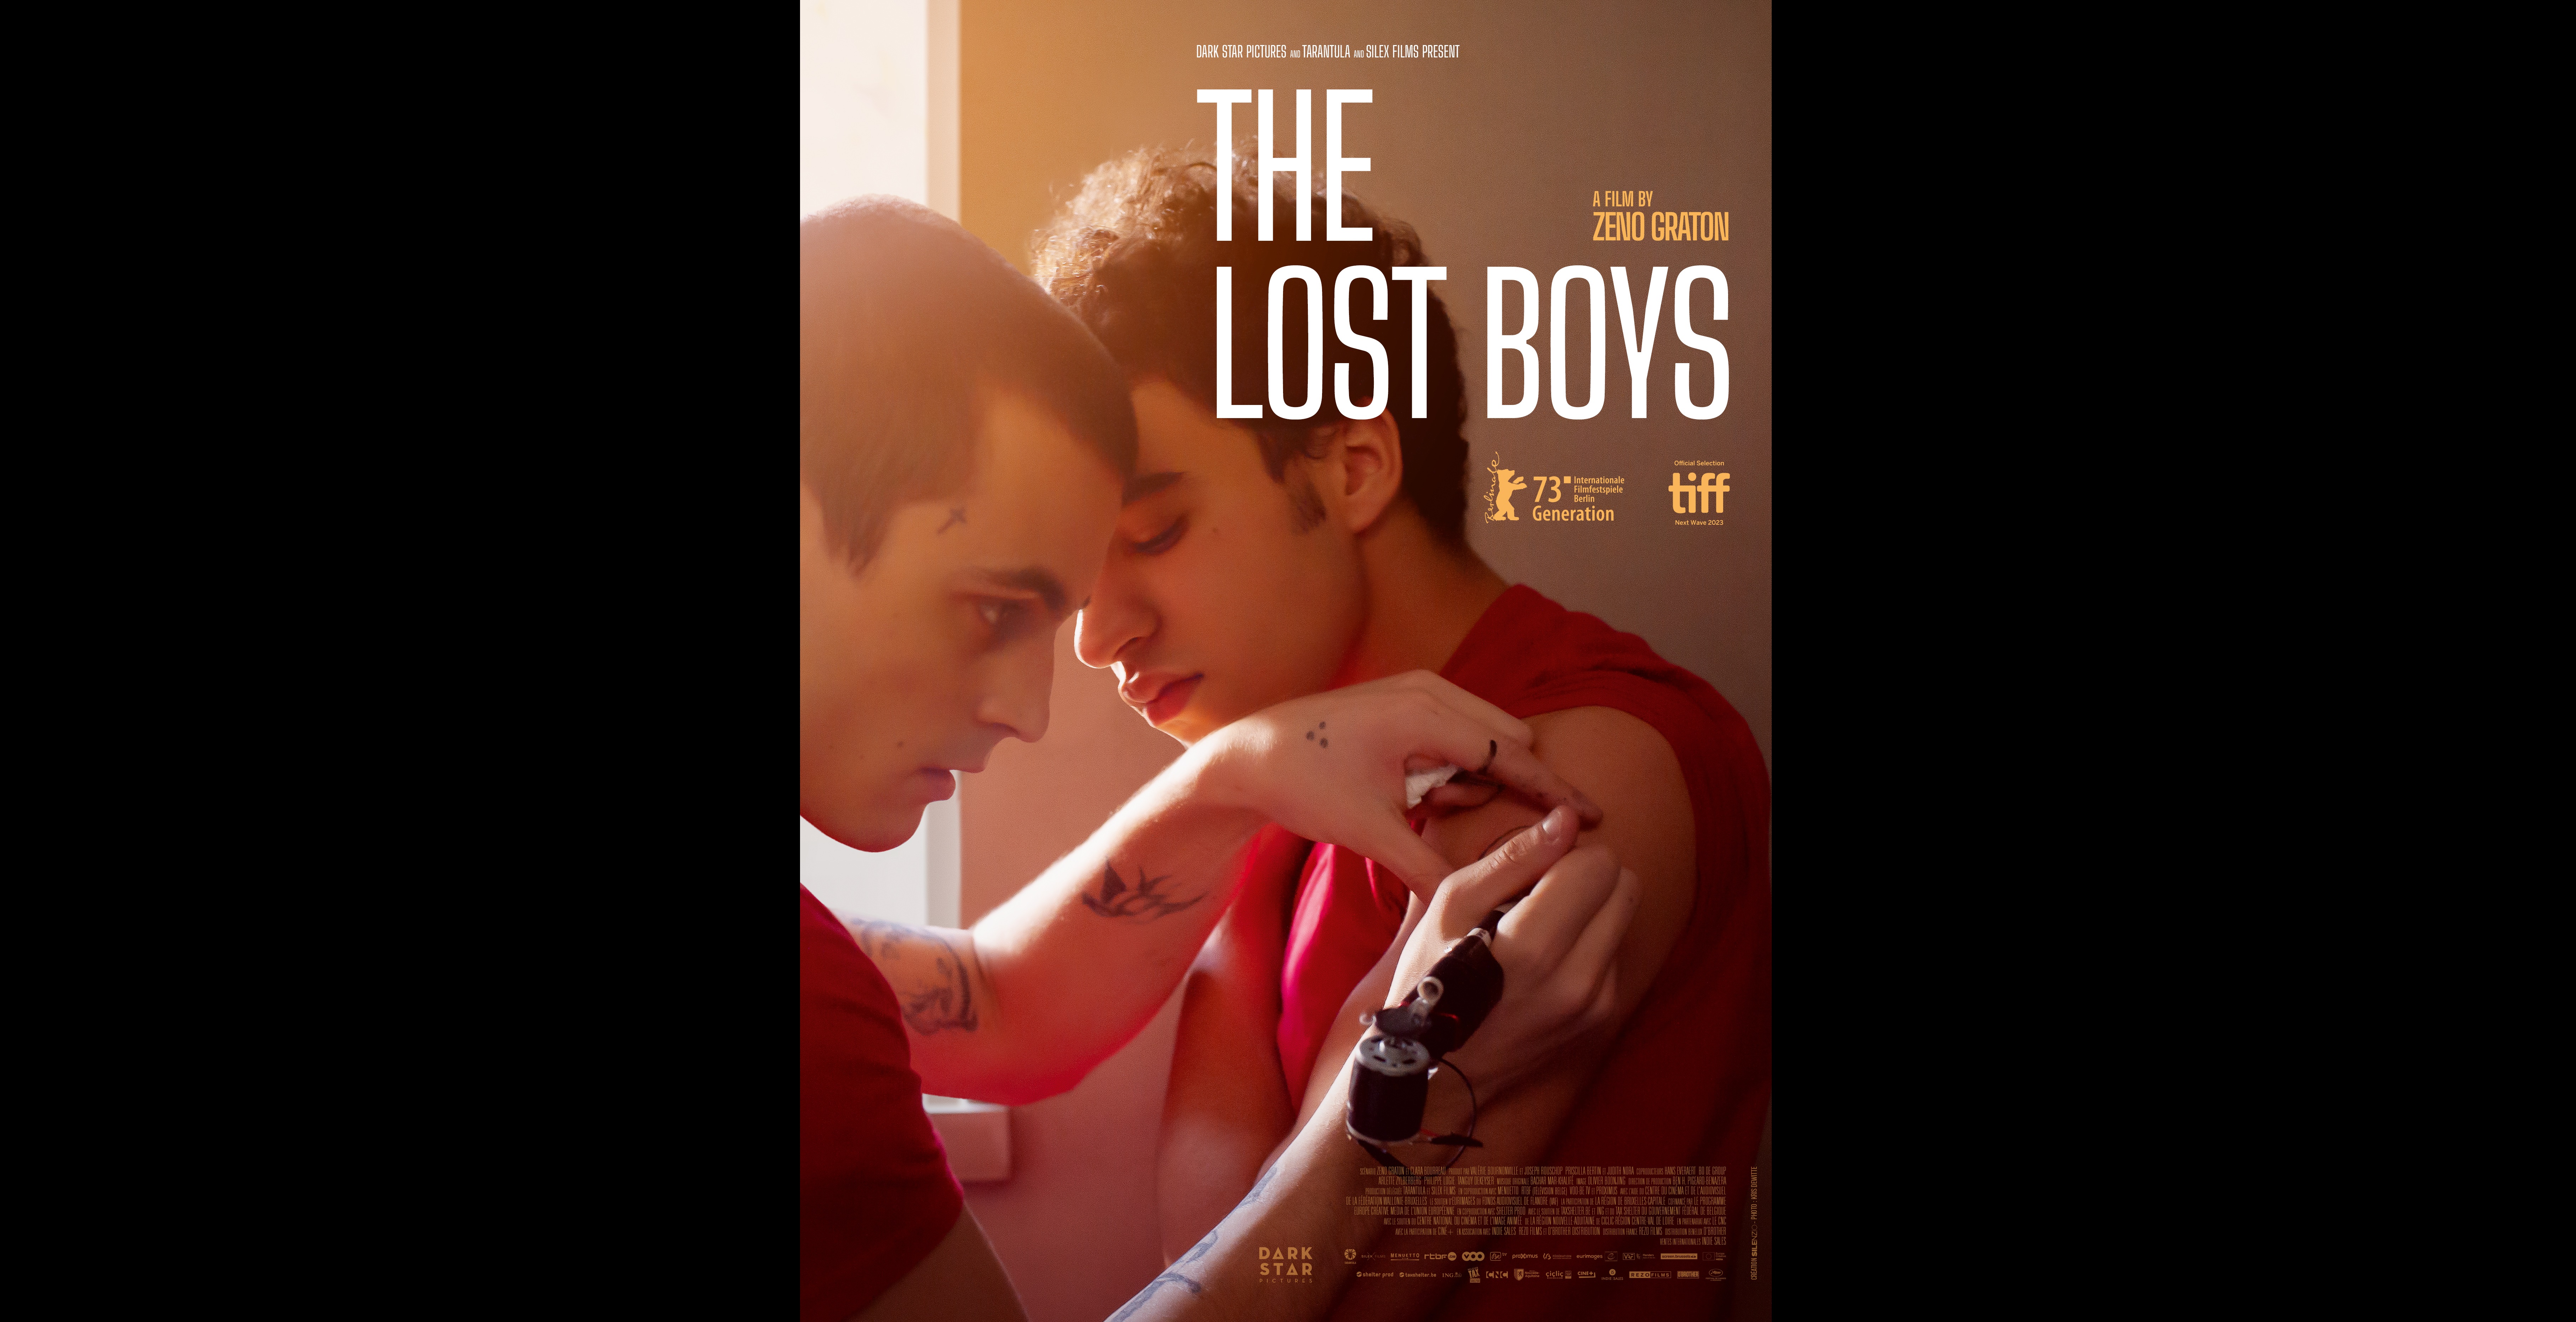 LostBoys_Poster-EN_DSP_V1